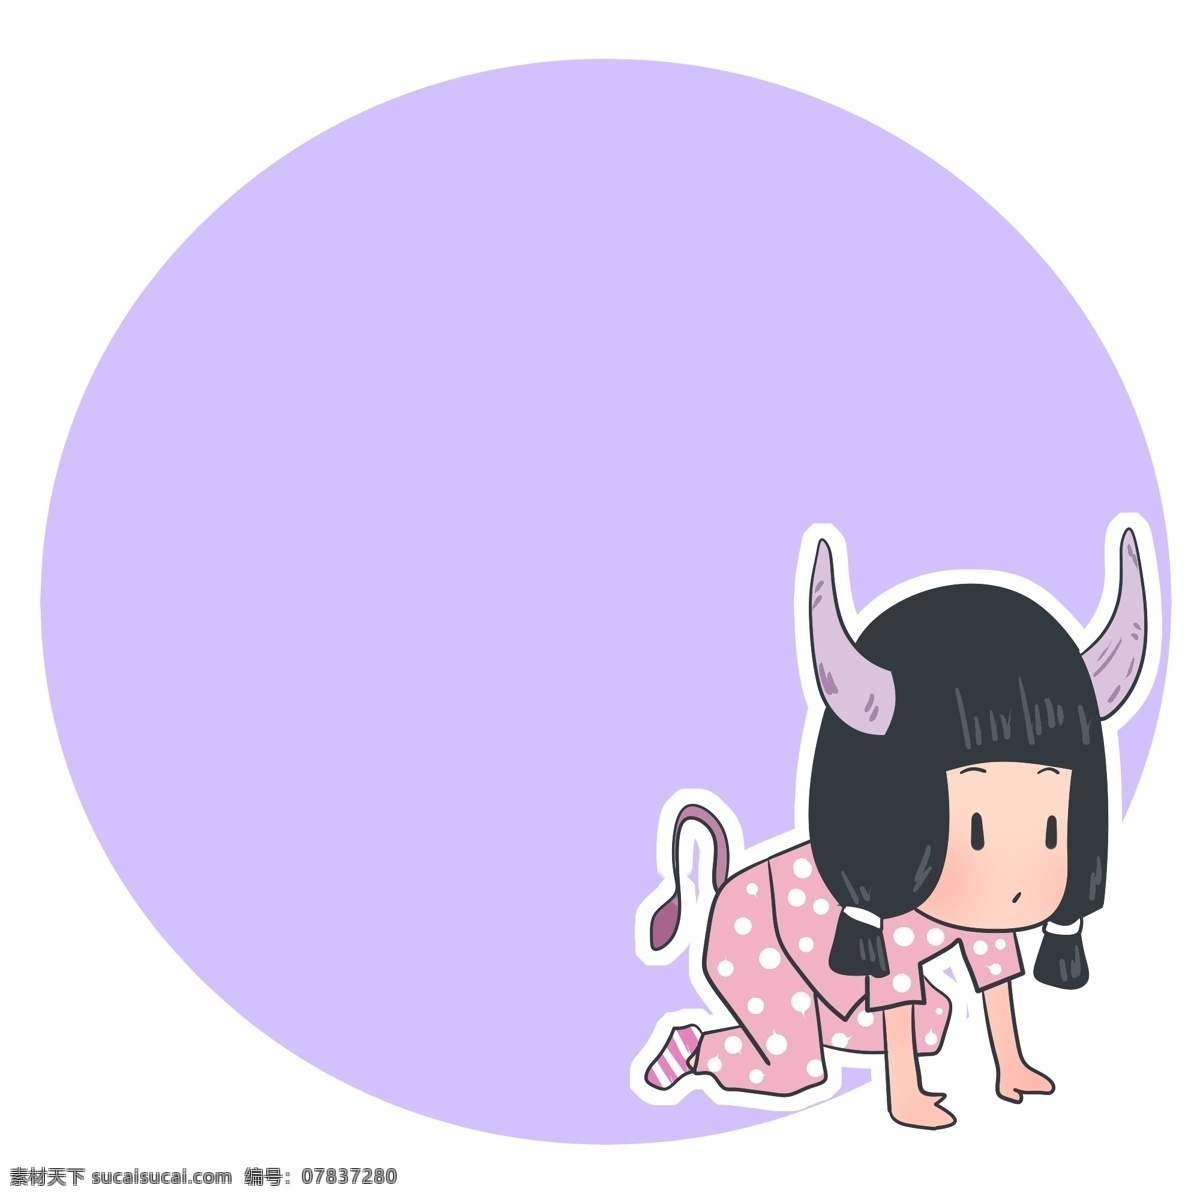 穿 牛 服 可爱 女孩 边框 可爱的女孩 紫色圆形边框 小女生边框 卡通小人 趴着的女孩